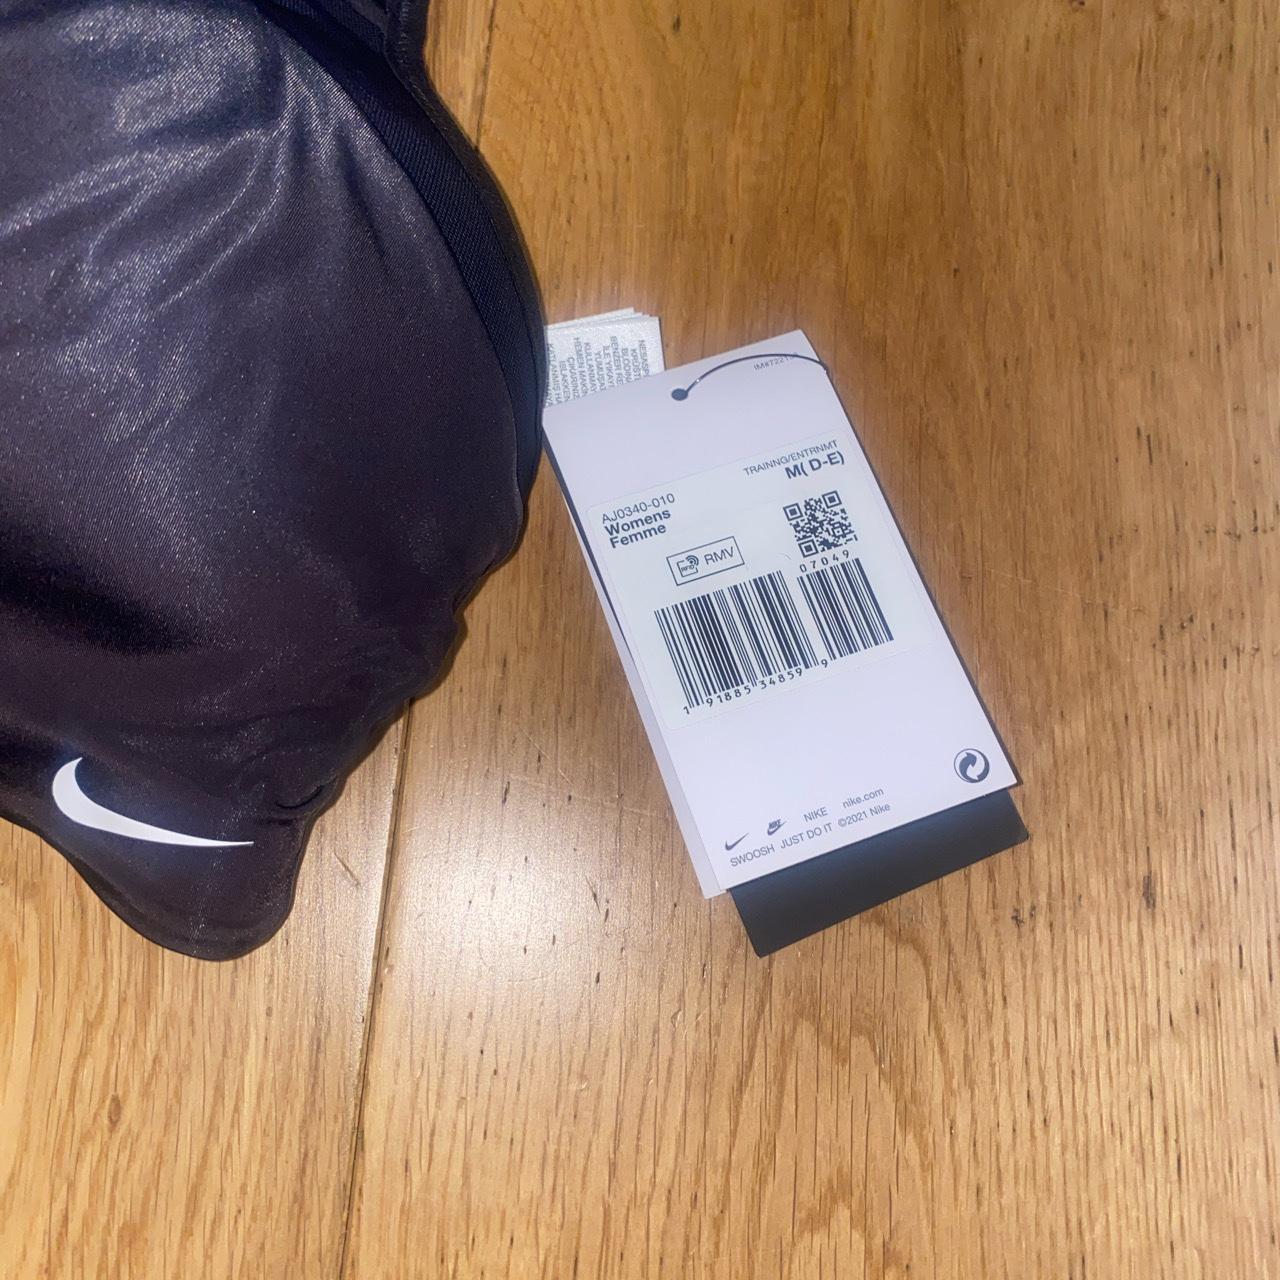 Nike Dri Fit Bra Size: Medium ( D - E ) Colour: - Depop